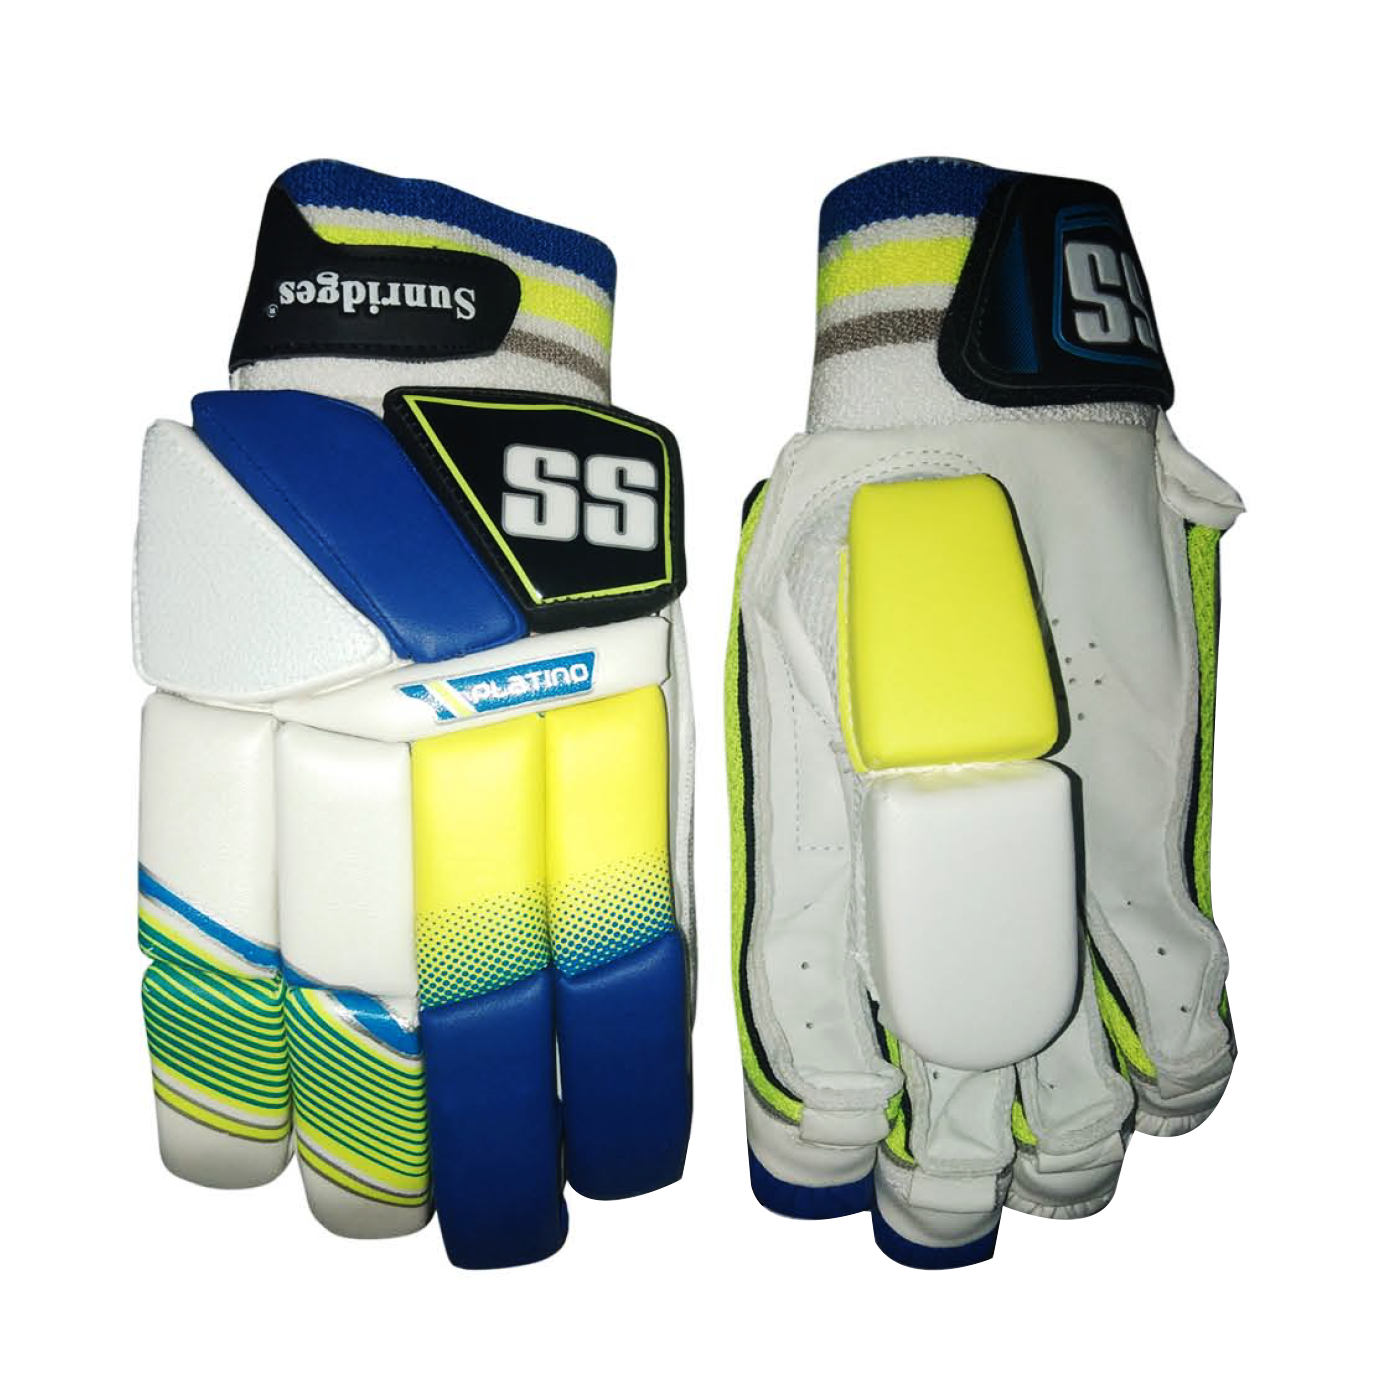 SS Platino Cricket Gloves